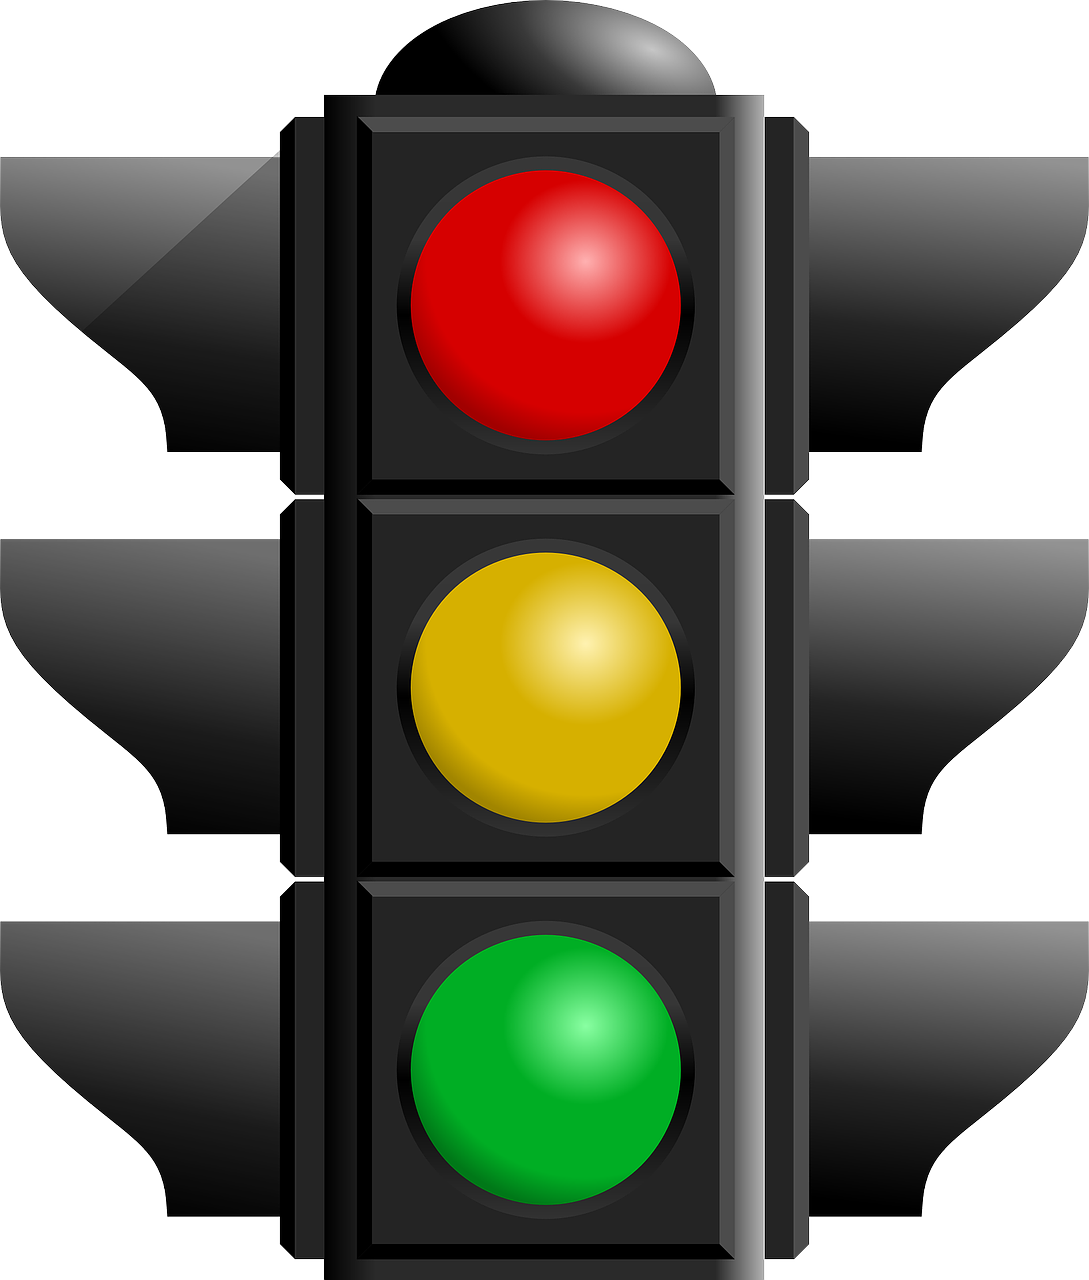 Multa per semaforo rosso: come fare contestazione e a chi spetta